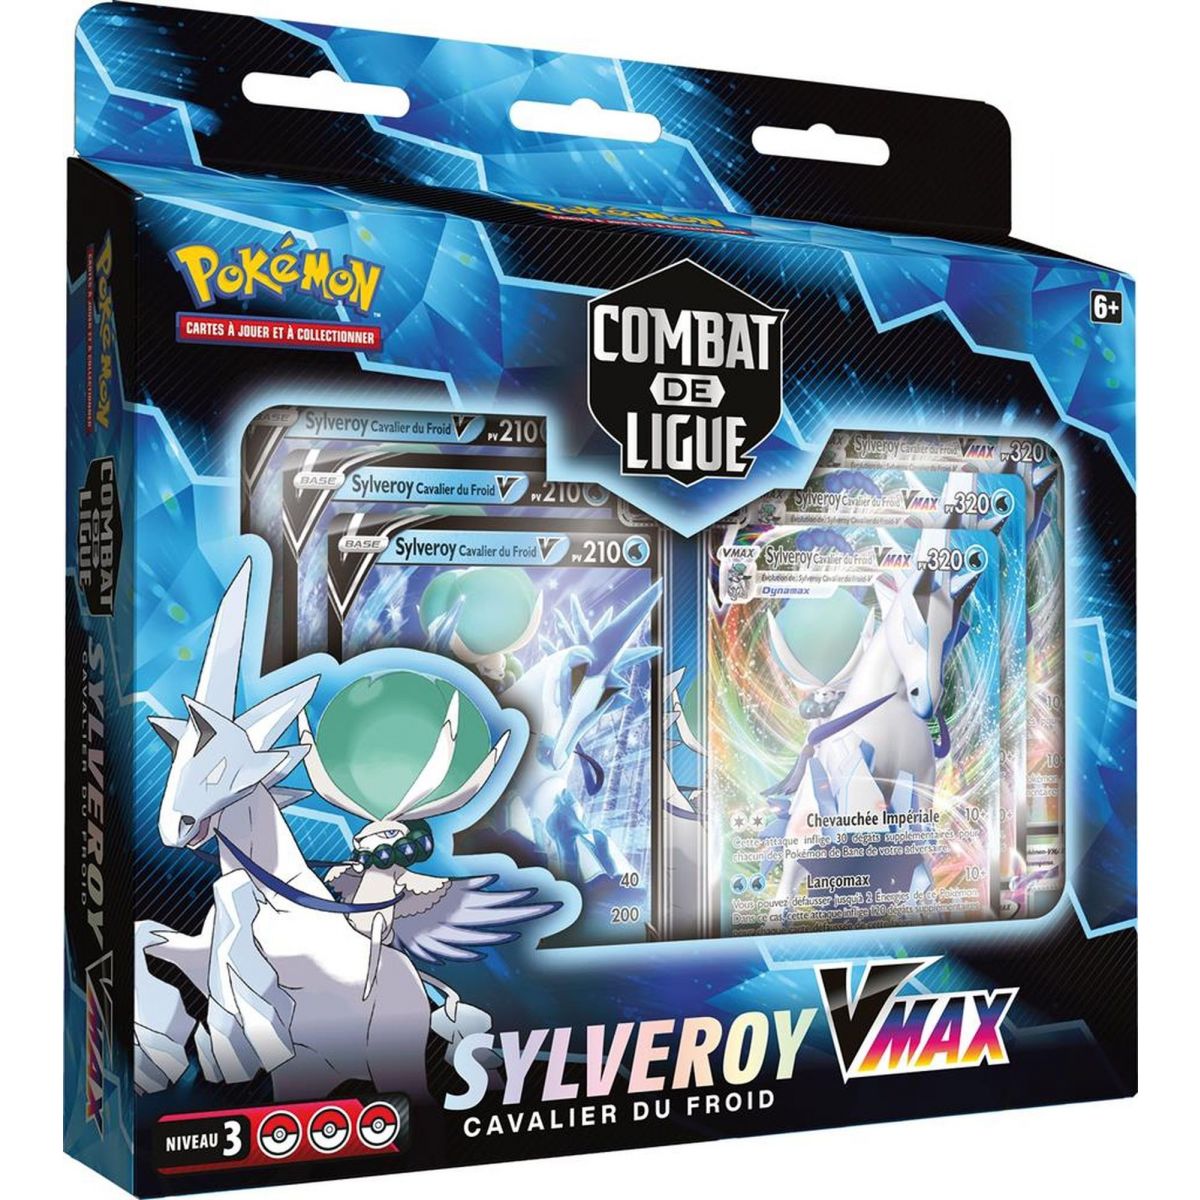 Pokémon - League Battle Deck - Sylveroy Cold Rider VMAX